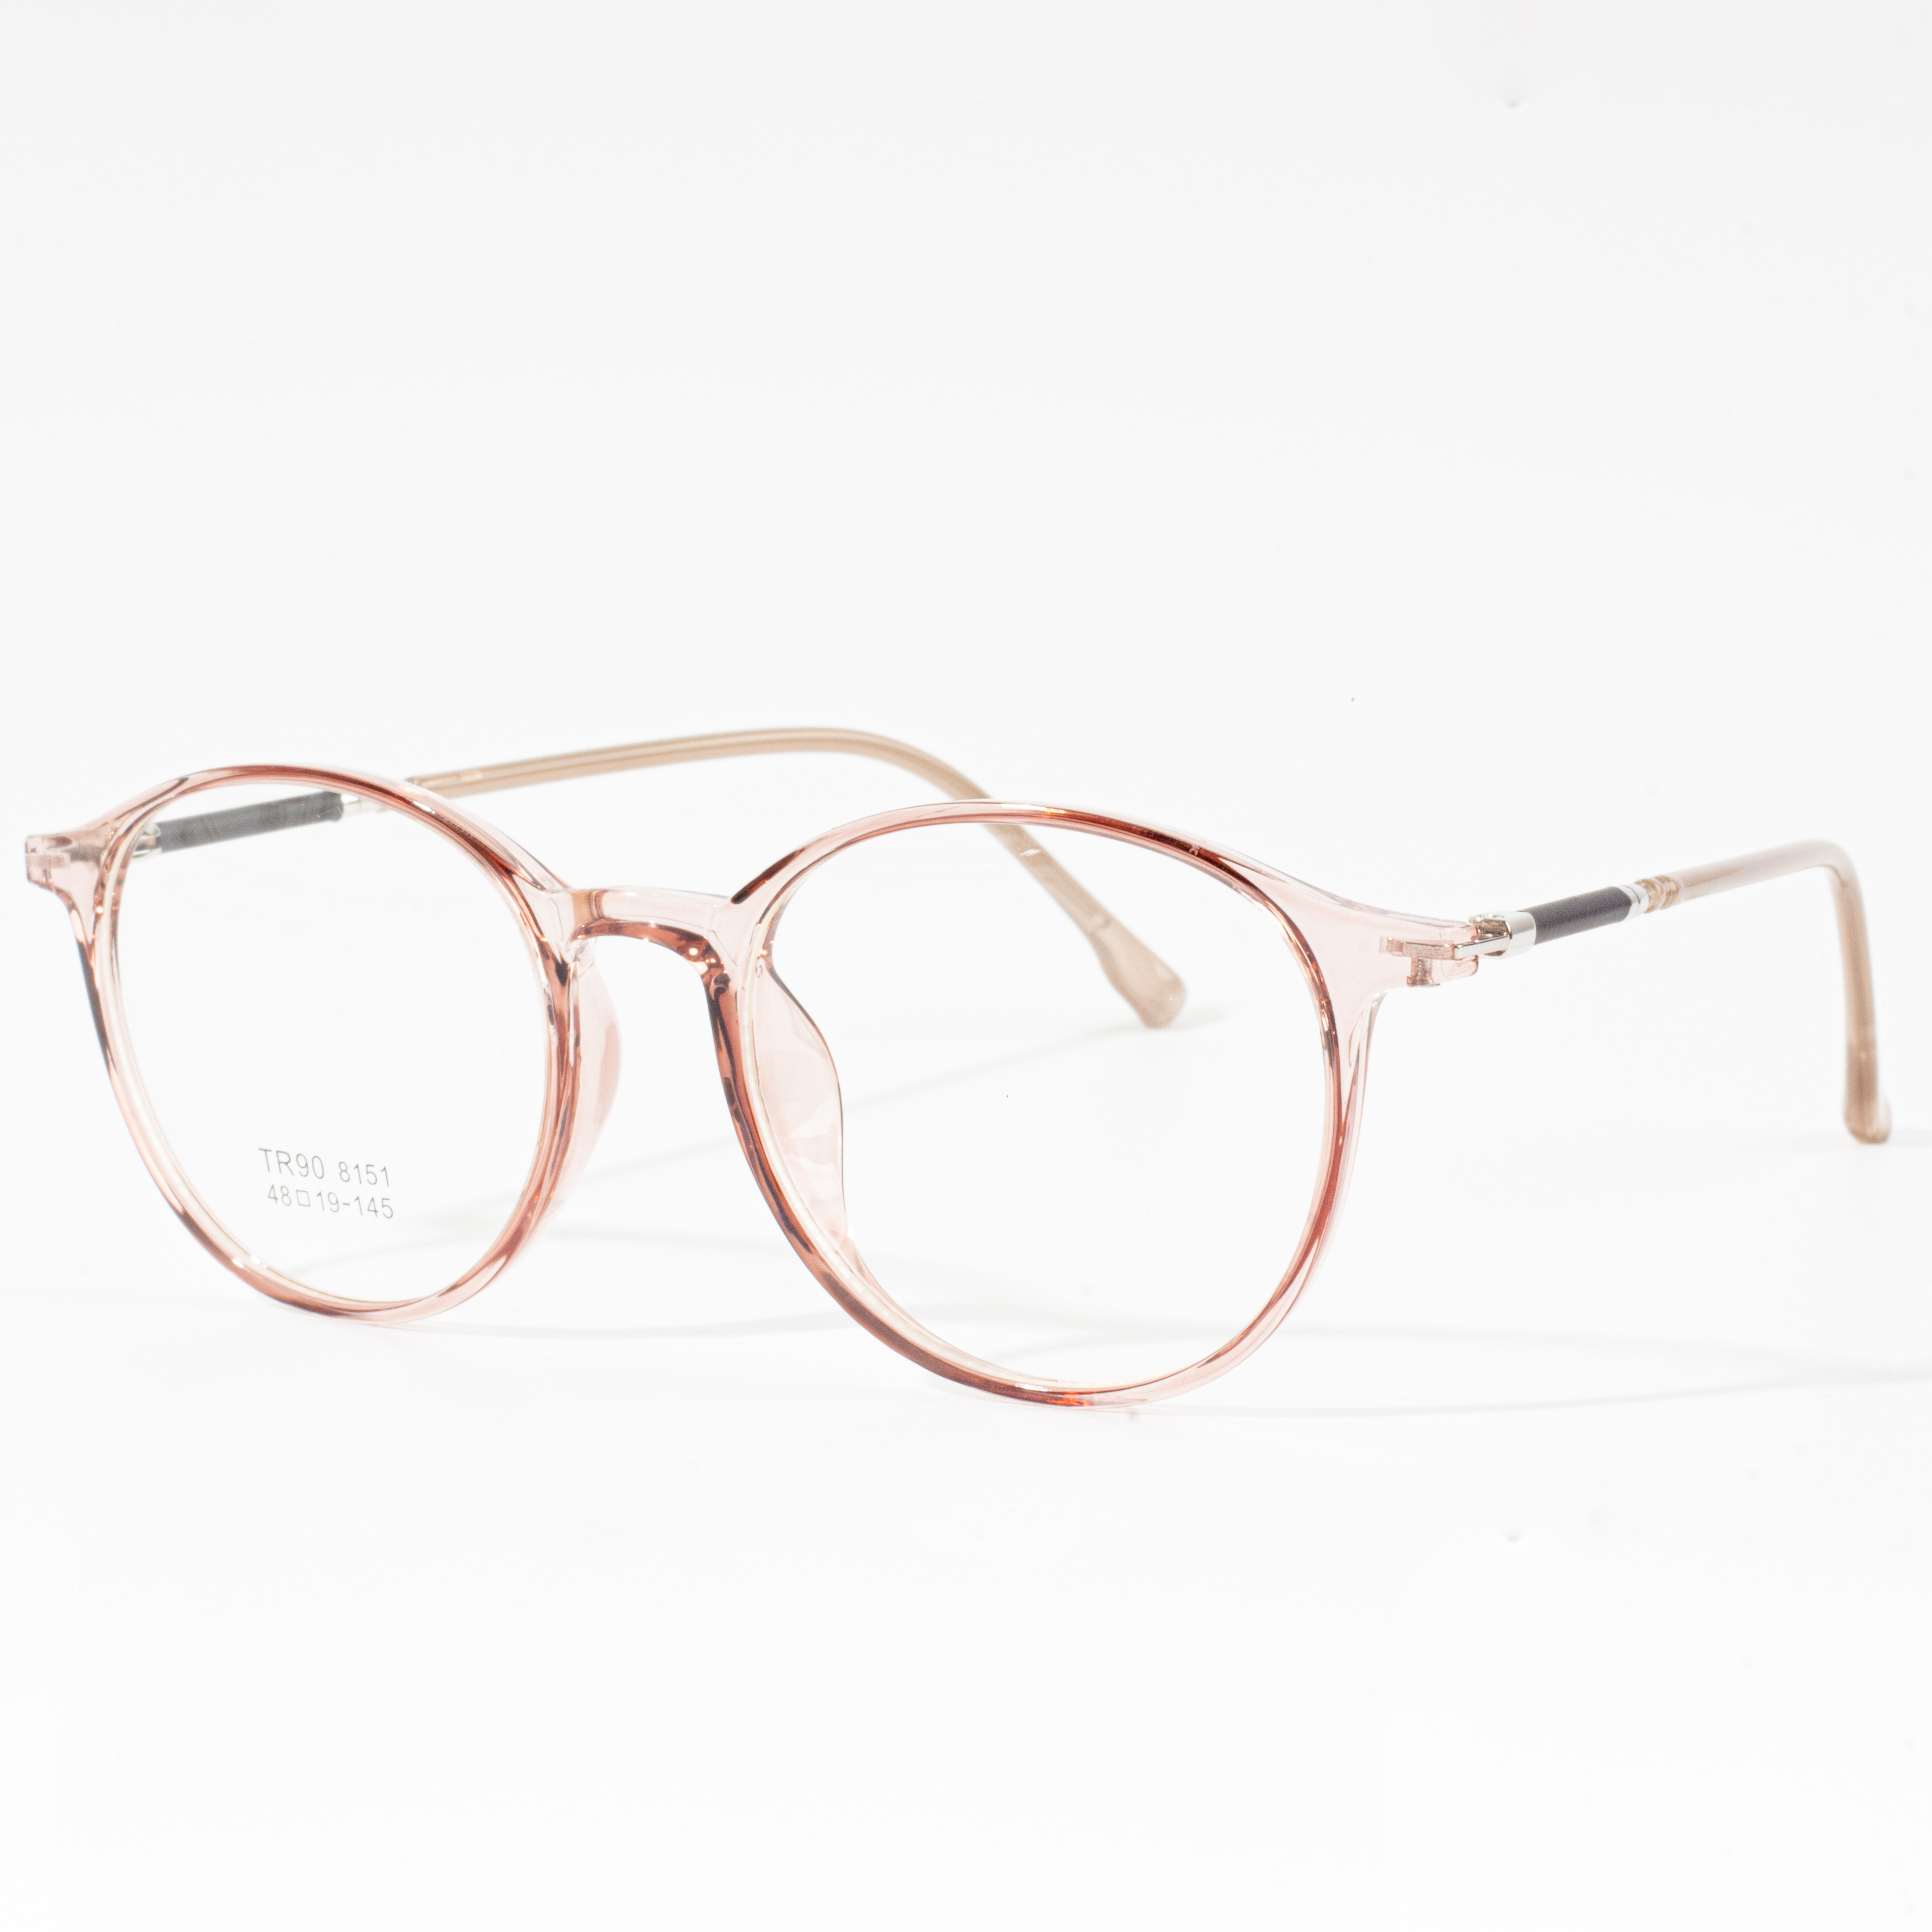 Montures de créateurs pour hommes et femmes - Eyeglasses.com 广告· https://www.eyeglasses.com/ (888) 896-3885 Achetez des montures de créateurs des meilleures marques mondiales de lunettes pour la moitié des prix de détail aujourd'hui.